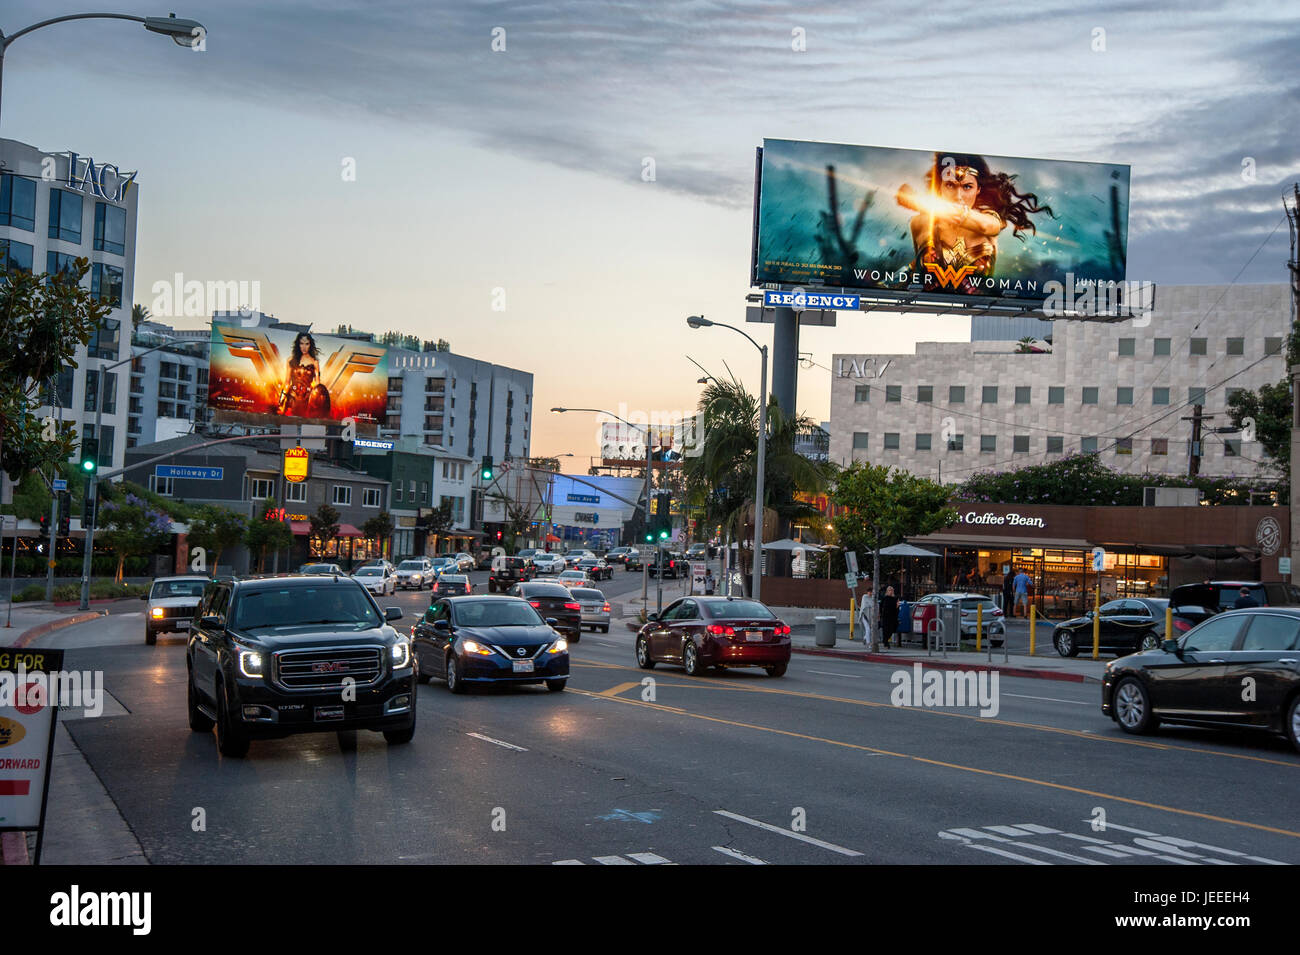 Il Sunset Strip al crepuscolo con cartelloni pubblicitari illuminati promuovere il film Wonder Woman a Los Angeles, CA. Foto Stock